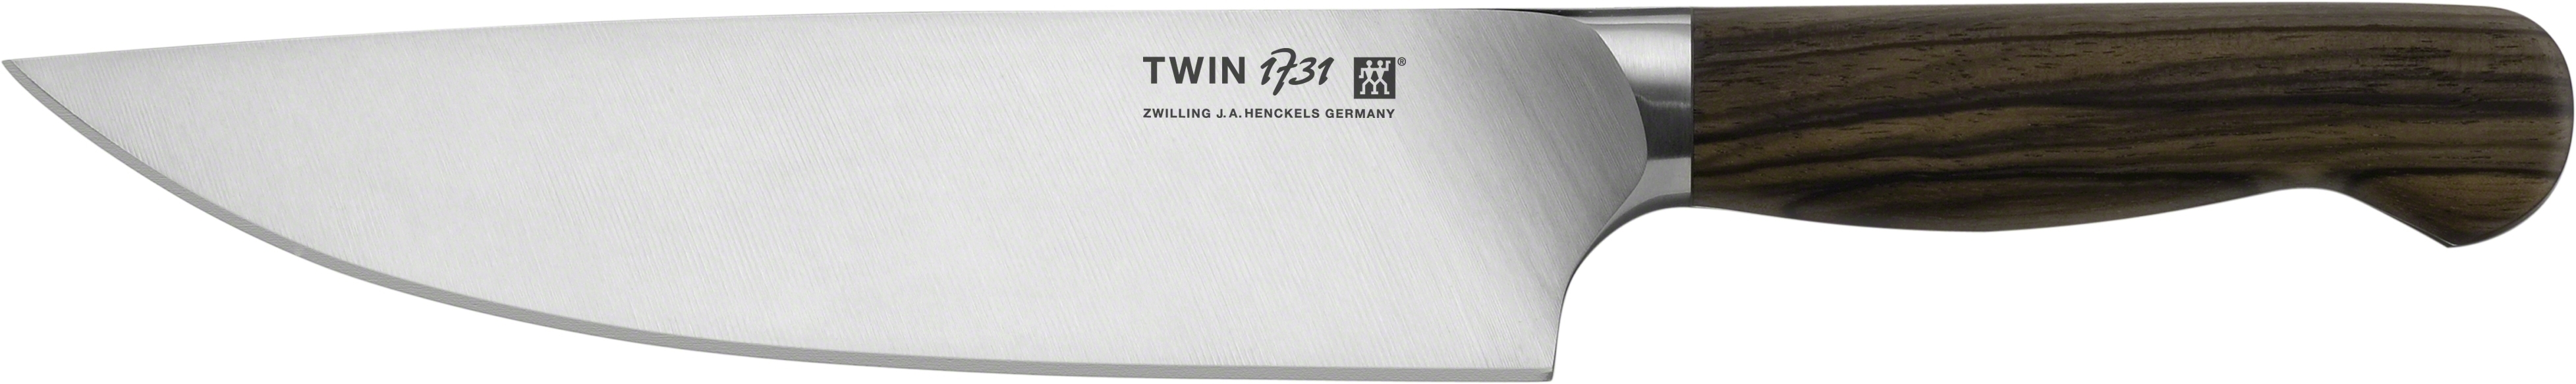 Zwilling TWIN 1731 Kochmesser 20 cm - 31867-201-0